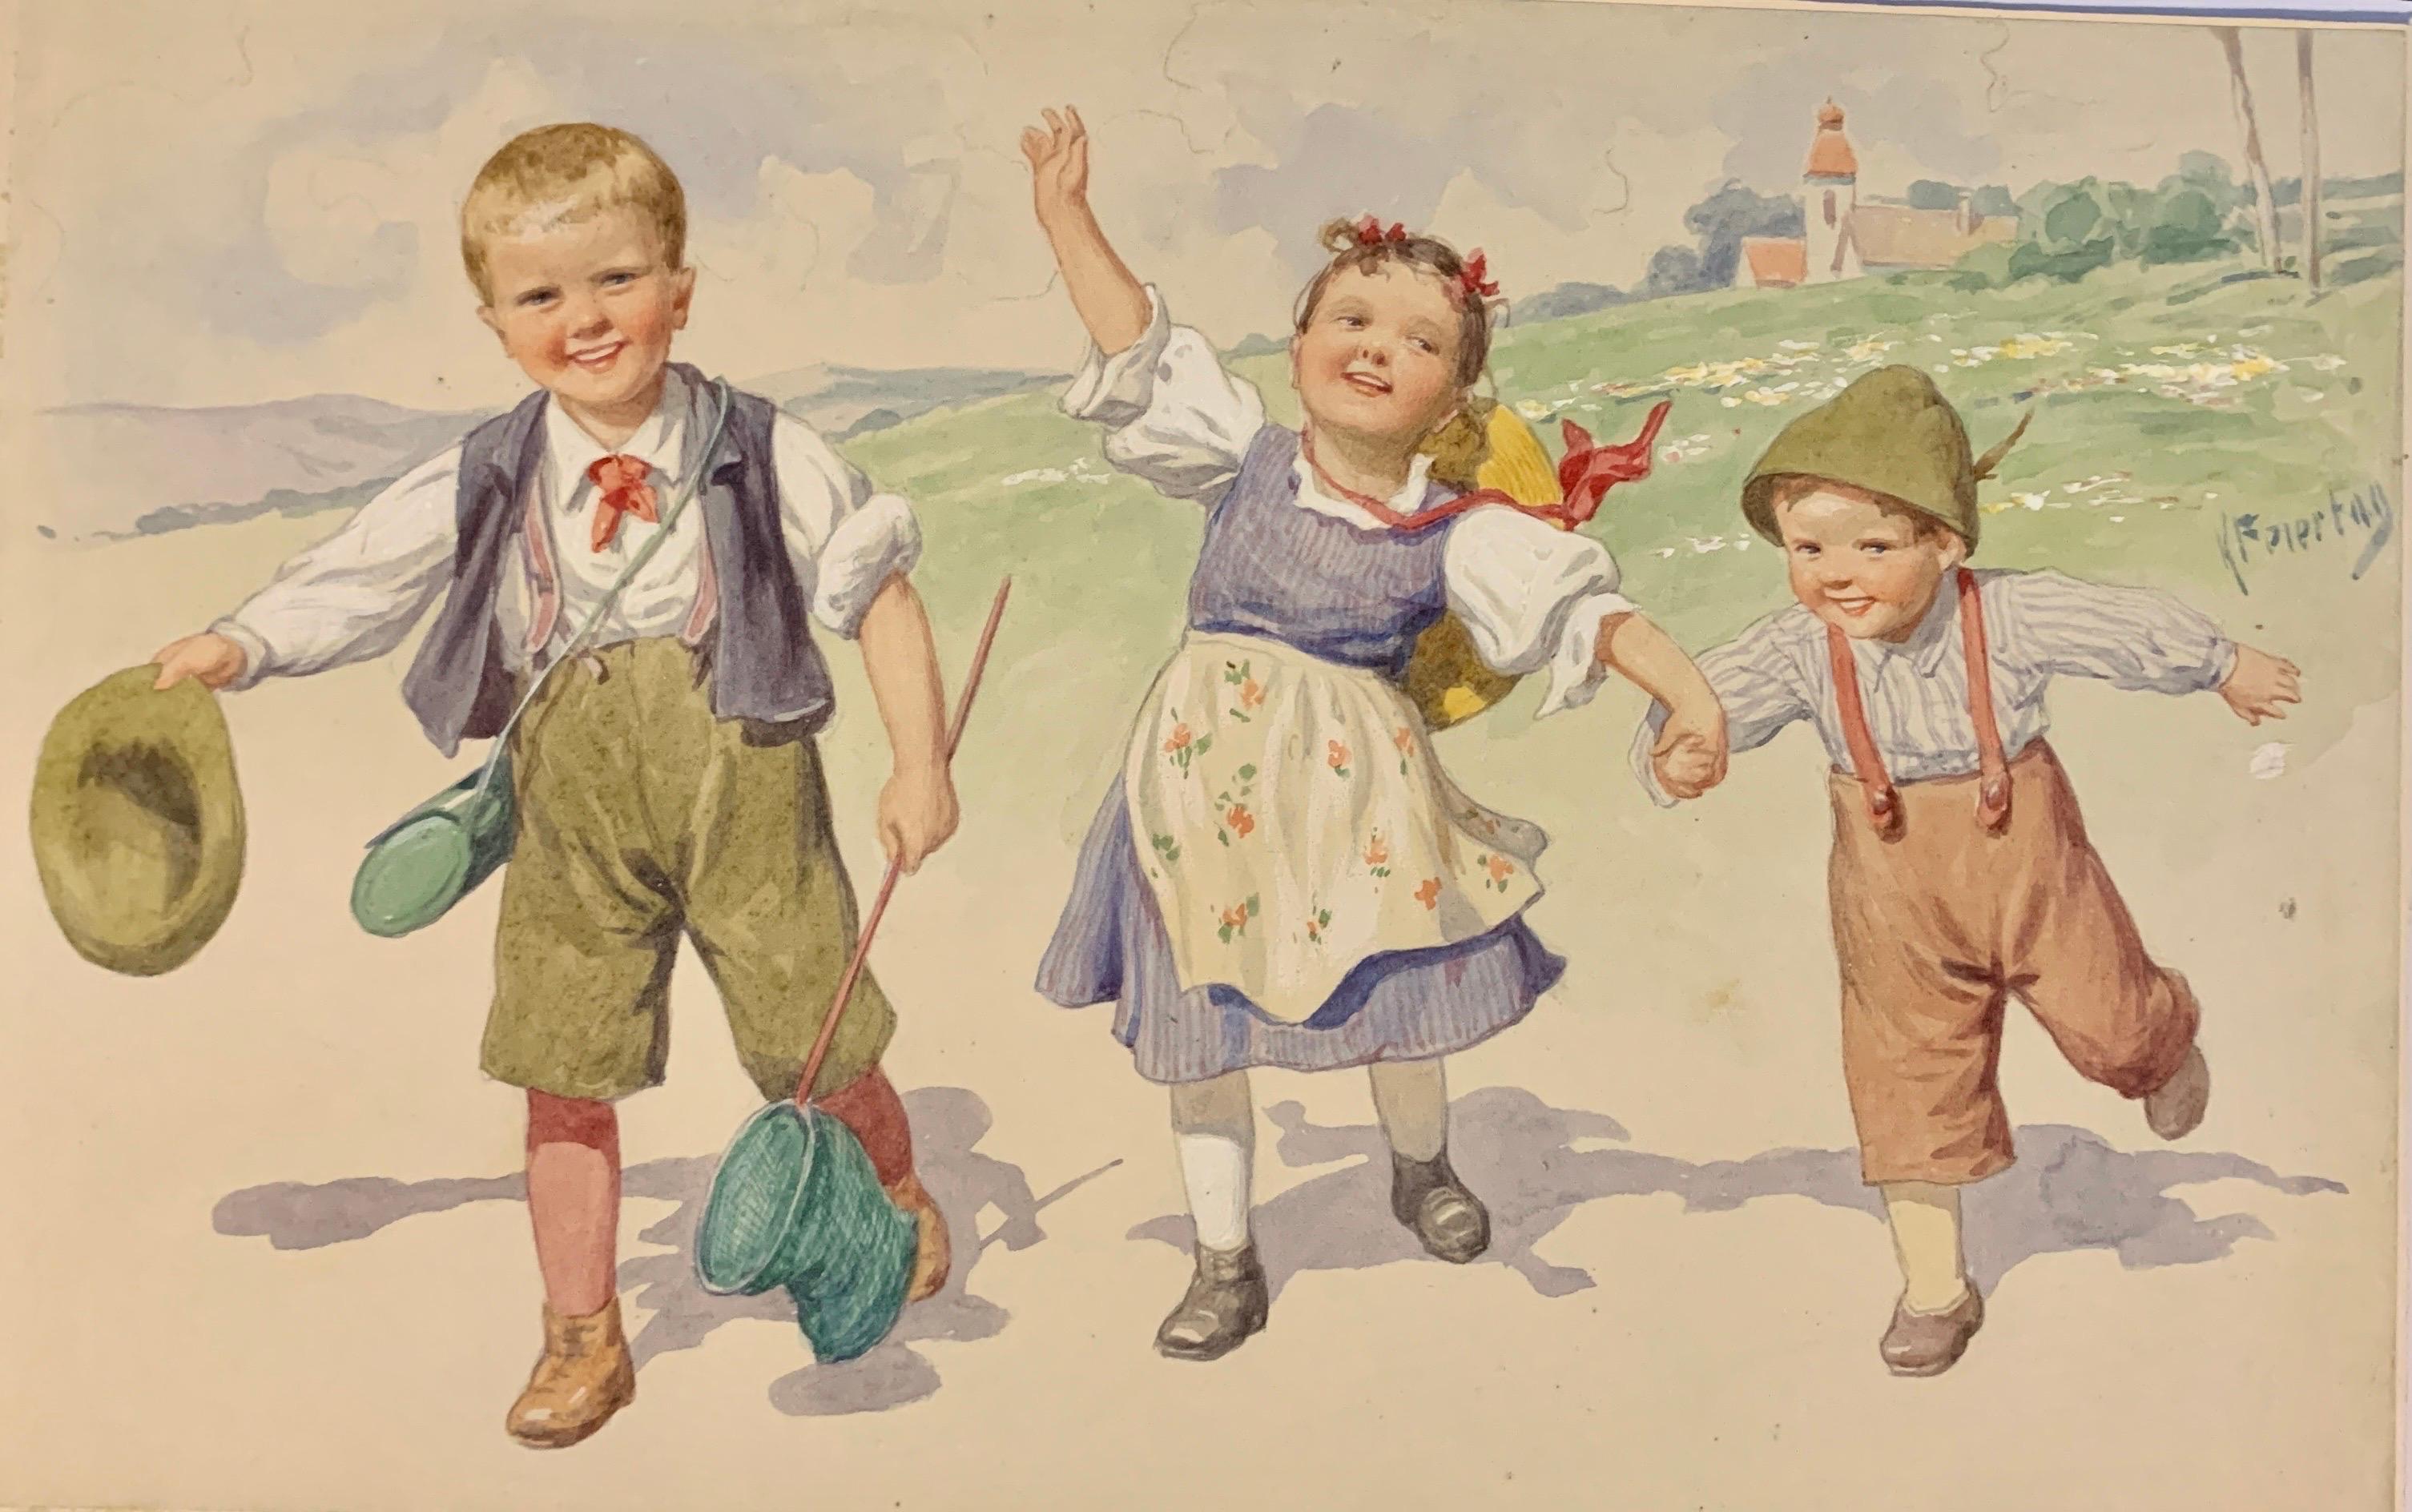 Österreichisch-deutsche Kinder des frühen 20. Jahrhunderts, die gemeinsam in einer Landschaft spielen  – Art von Karl Feiertag